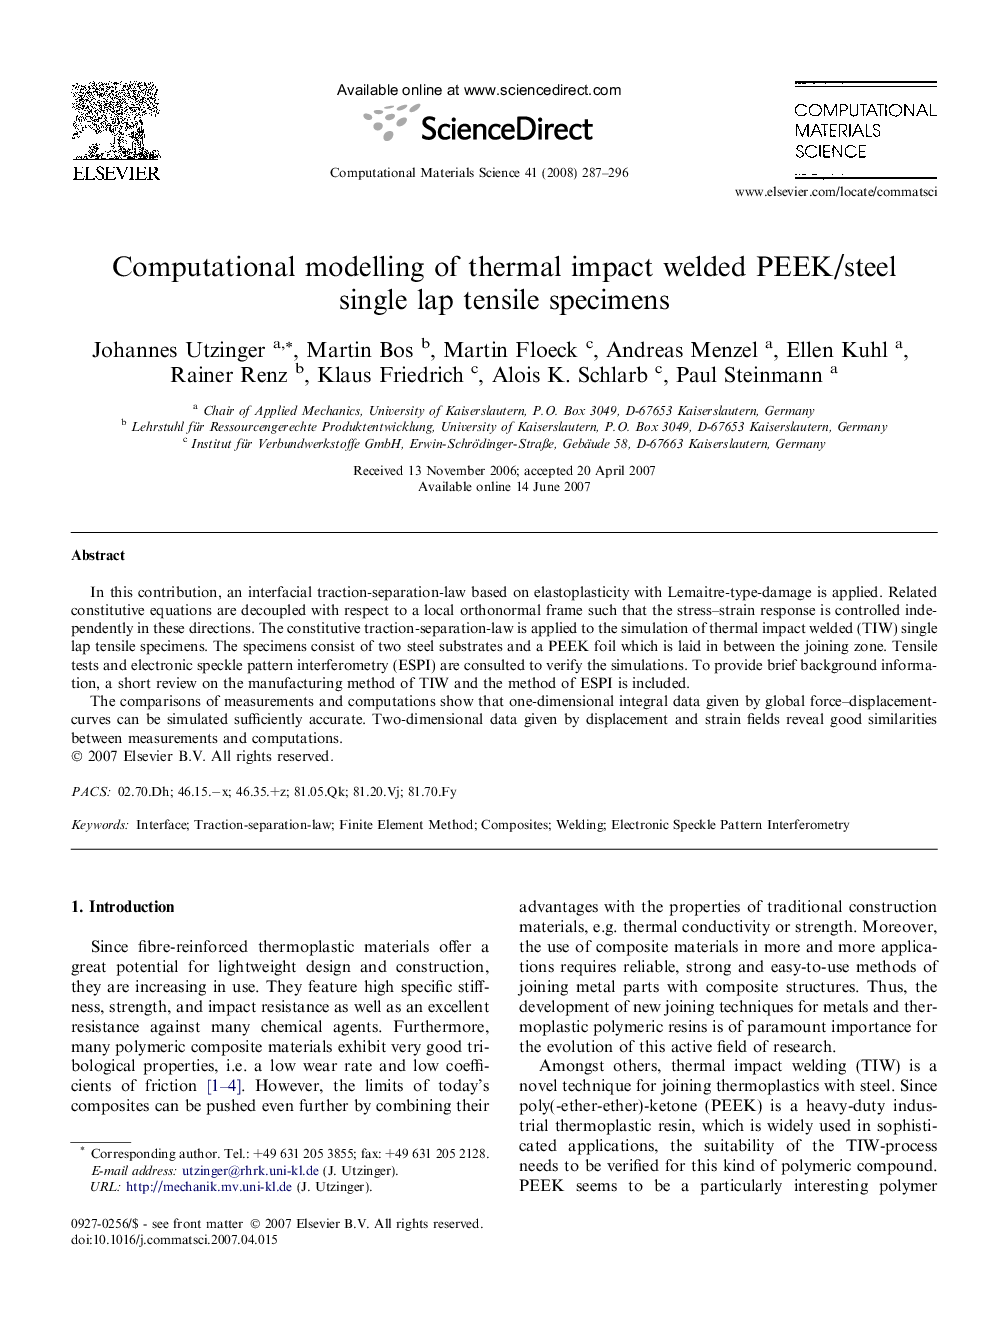 Computational modelling of thermal impact welded PEEK/steel single lap tensile specimens